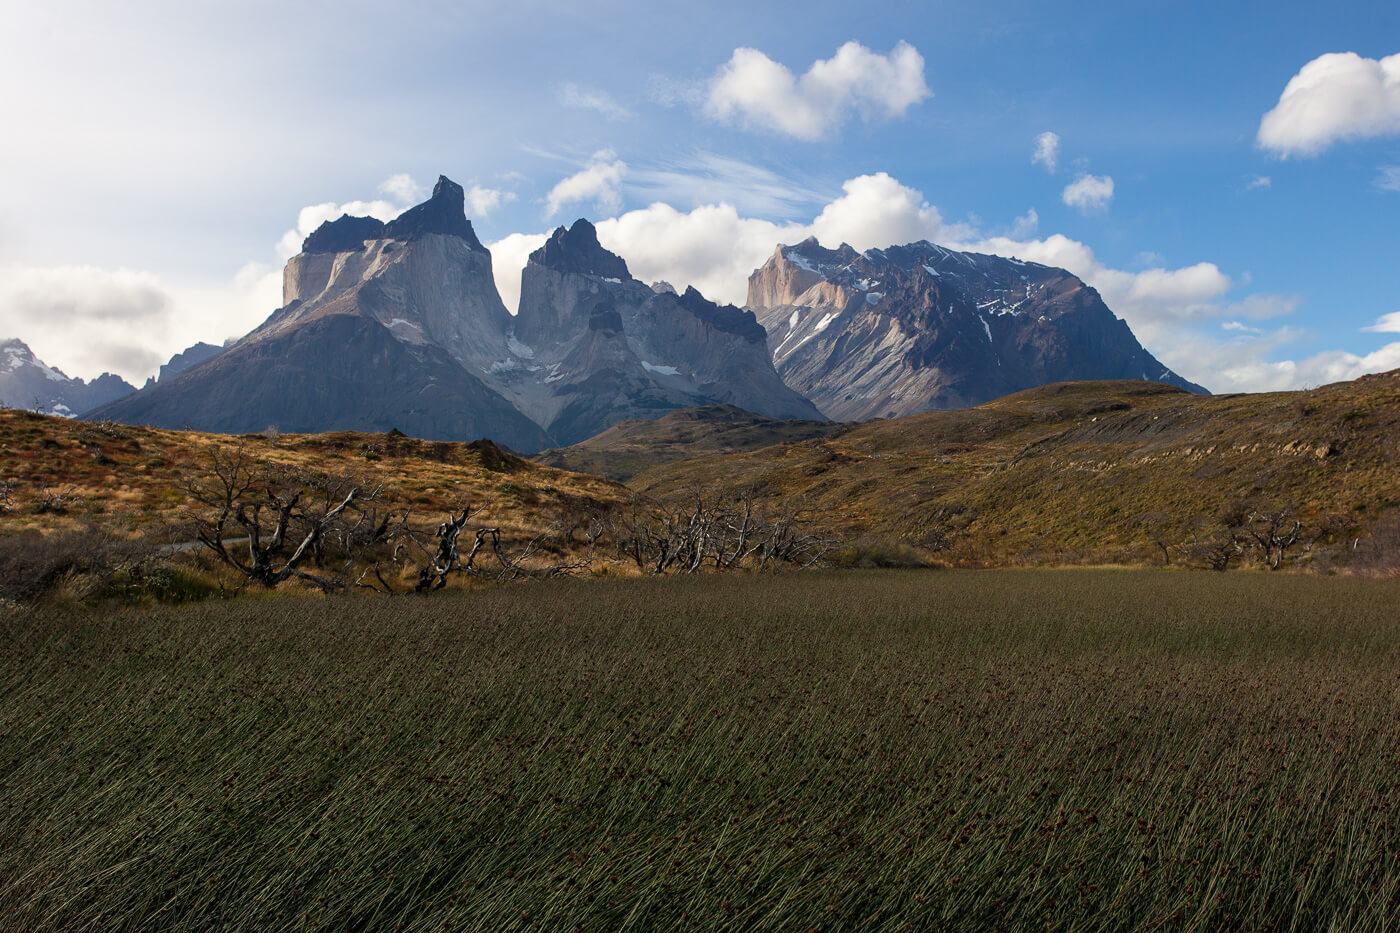 Los-Cuernos-in-Torres-del-Paine-national-park